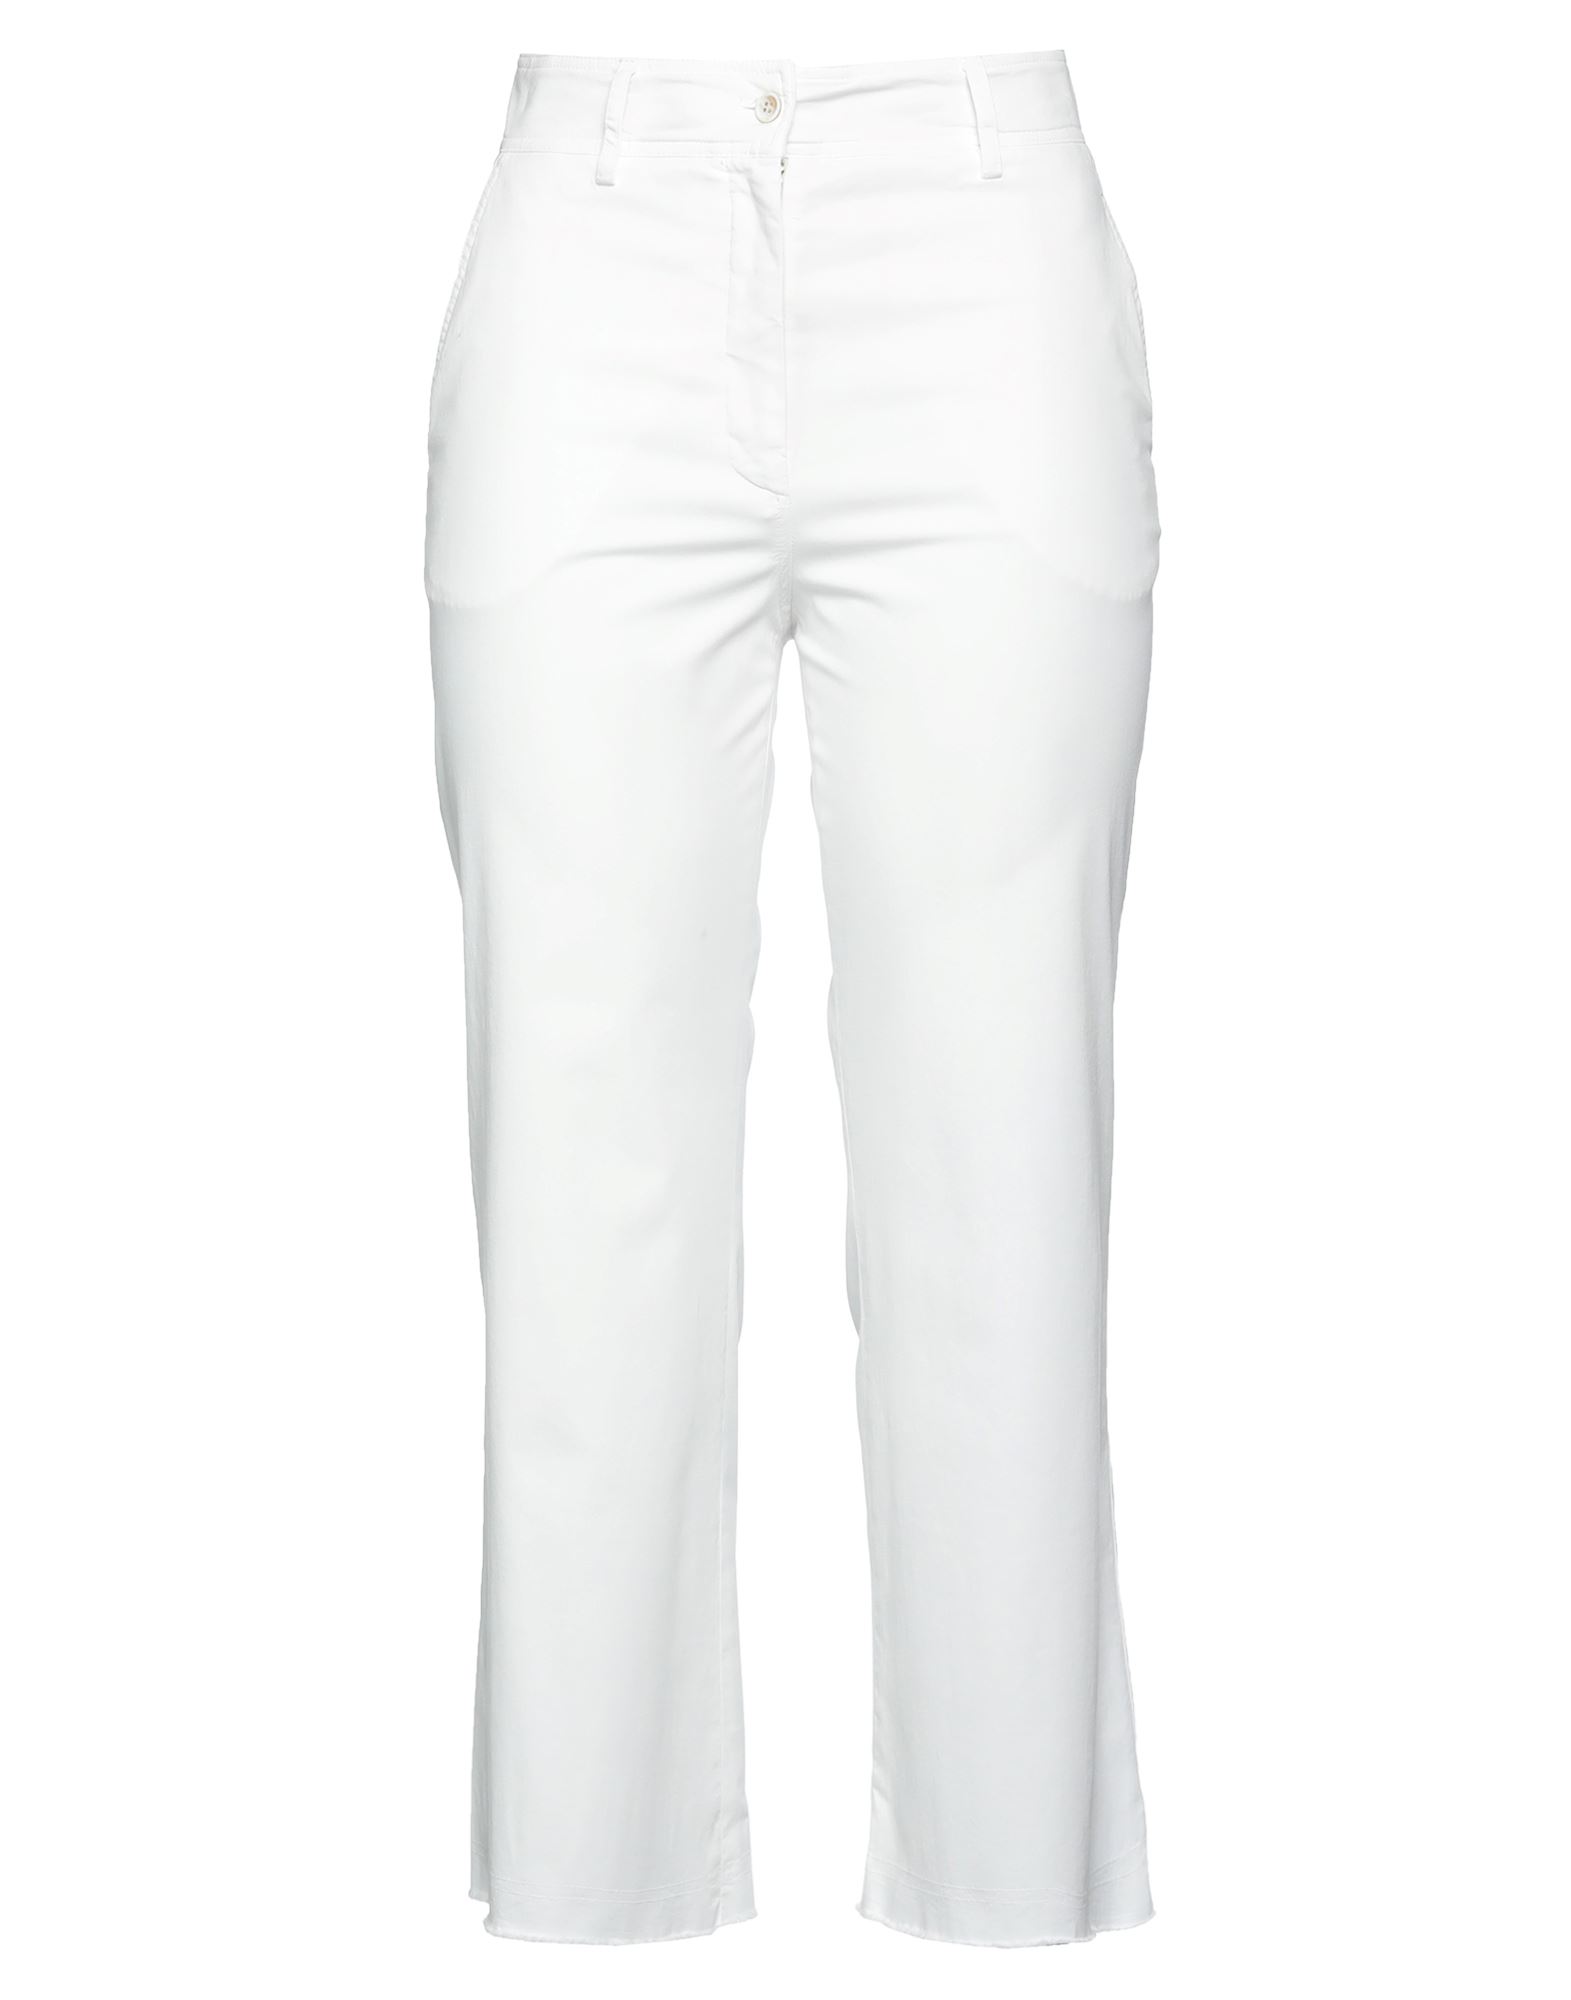 Antonelli Woman Pants White Size 4 Cotton, Elastane